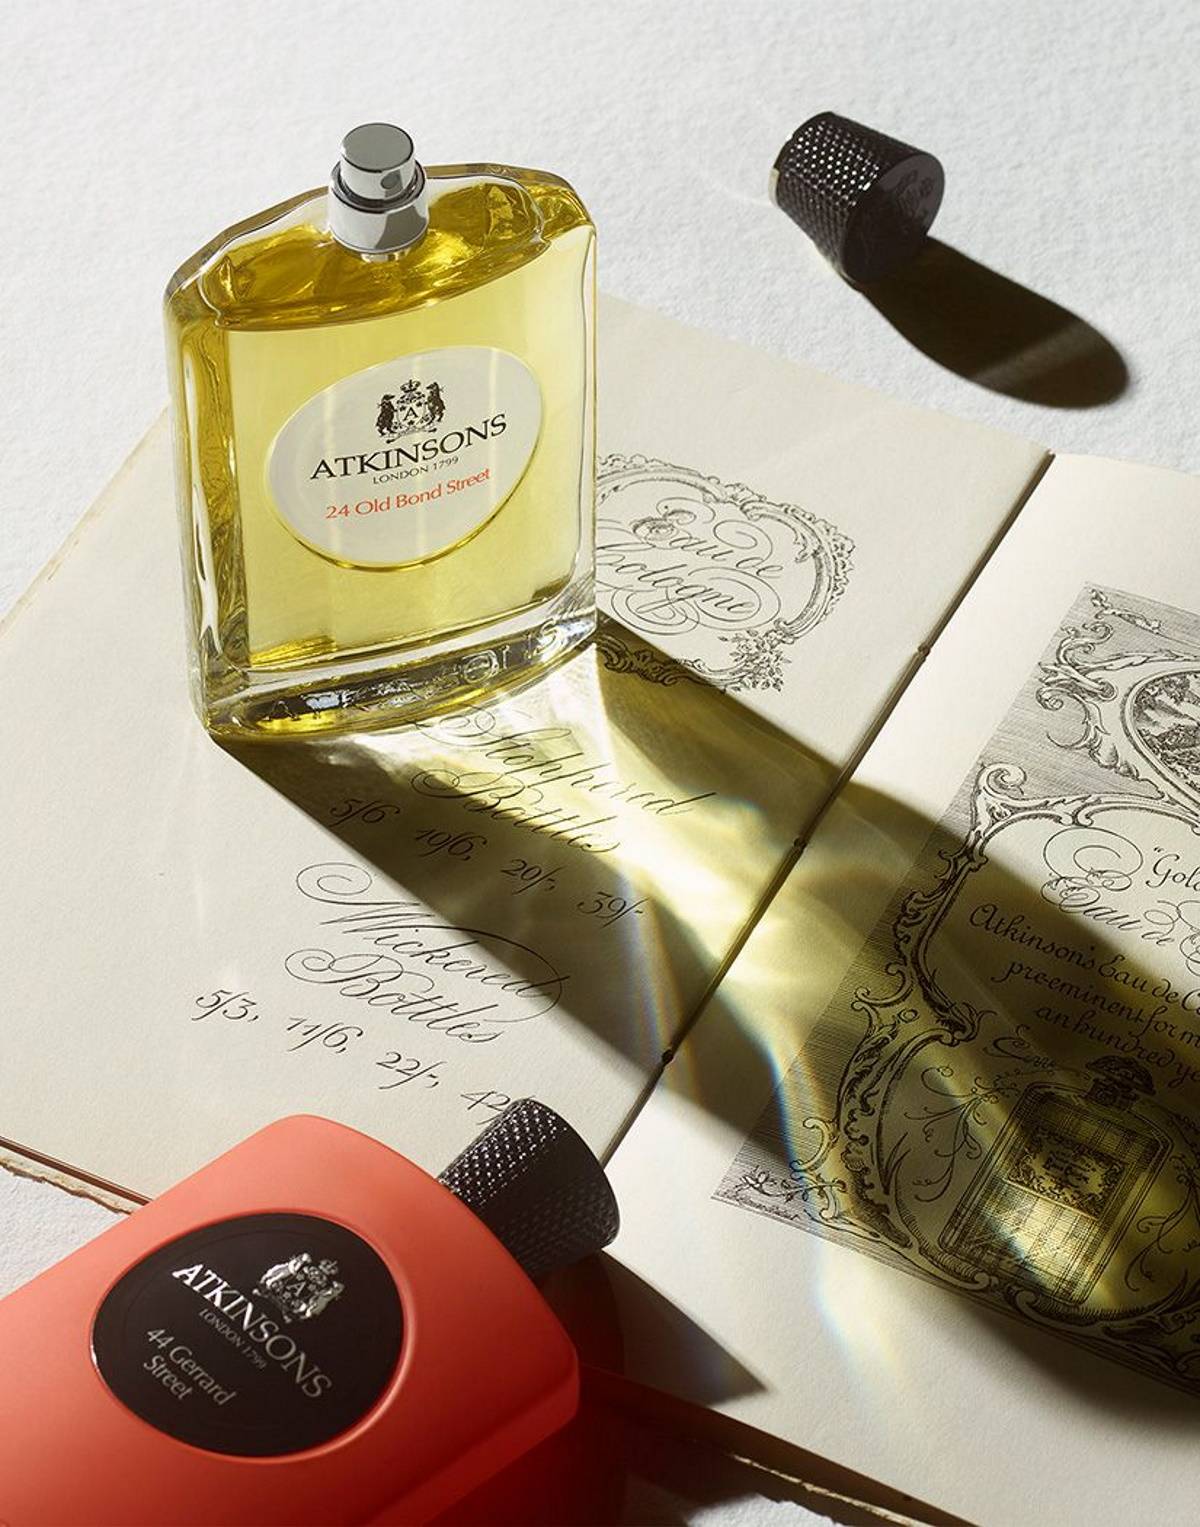 Atkinsons London: Perfumy z królewskiego dworu.  Z okazji premiery nowego zapachu w rodzinie Atkinsons London – James – przybliżamy historię perfumeryjnej marki, którą pokochali królowie i carowie.